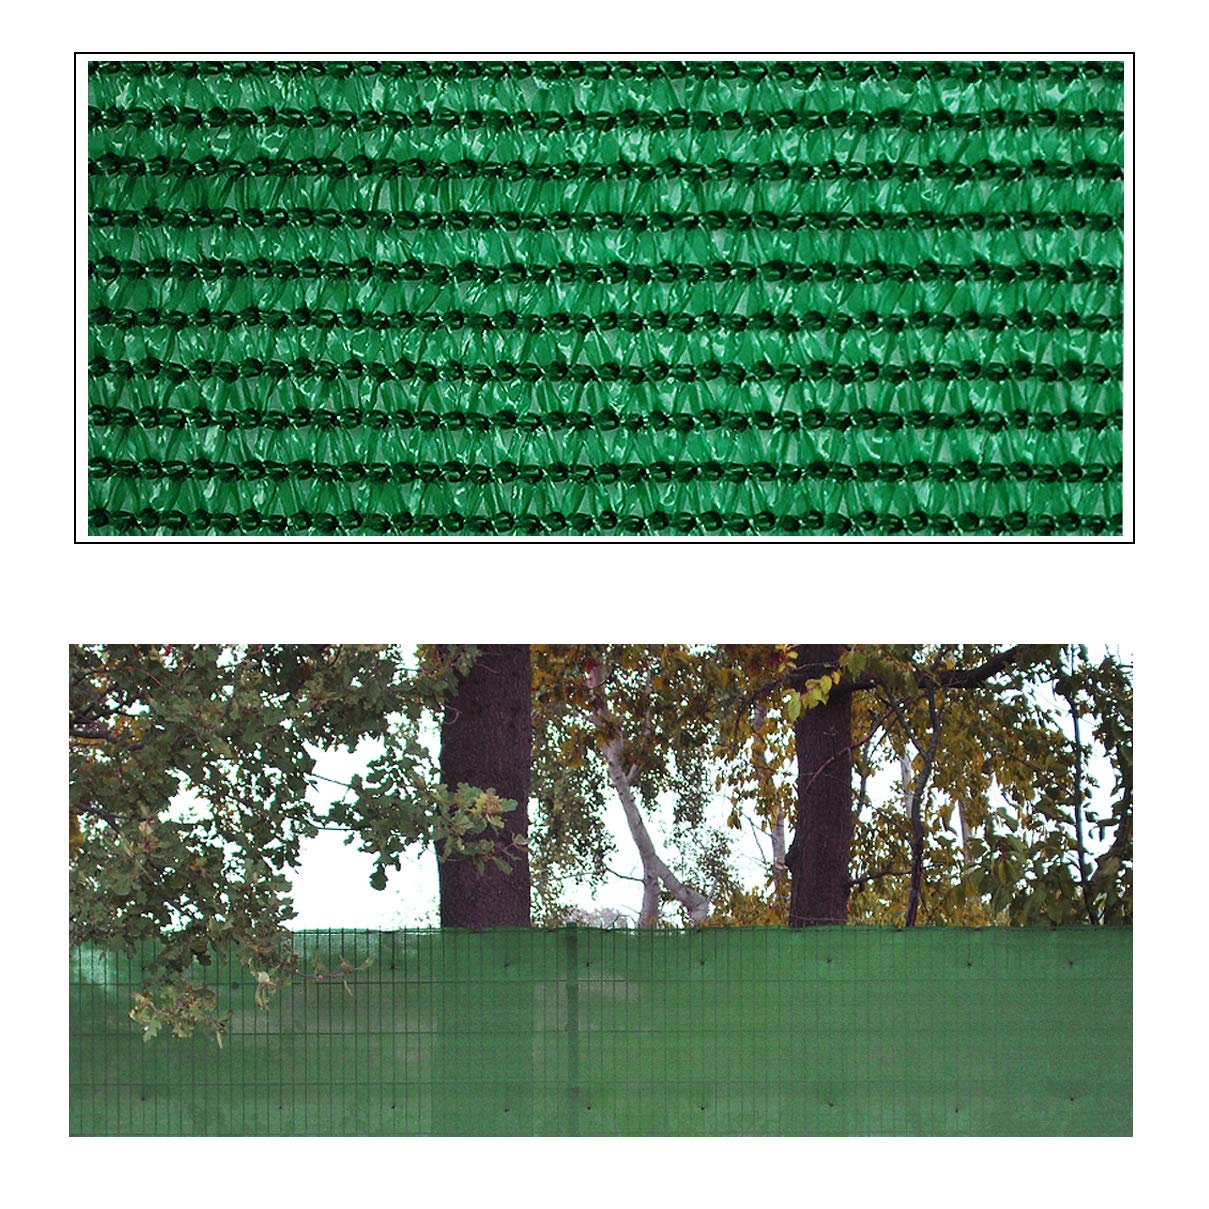 Helo 'P10' Sichtschutznetz Zaunblende 10 m Länge x 1,8 m Höhe (grün) aus HDPE Gewebe, hoch reißest, witterungs- und UV-beständig, ideal als Sichtschutz, Windschutz, Staubschutz oder Sonnenschutz Netz